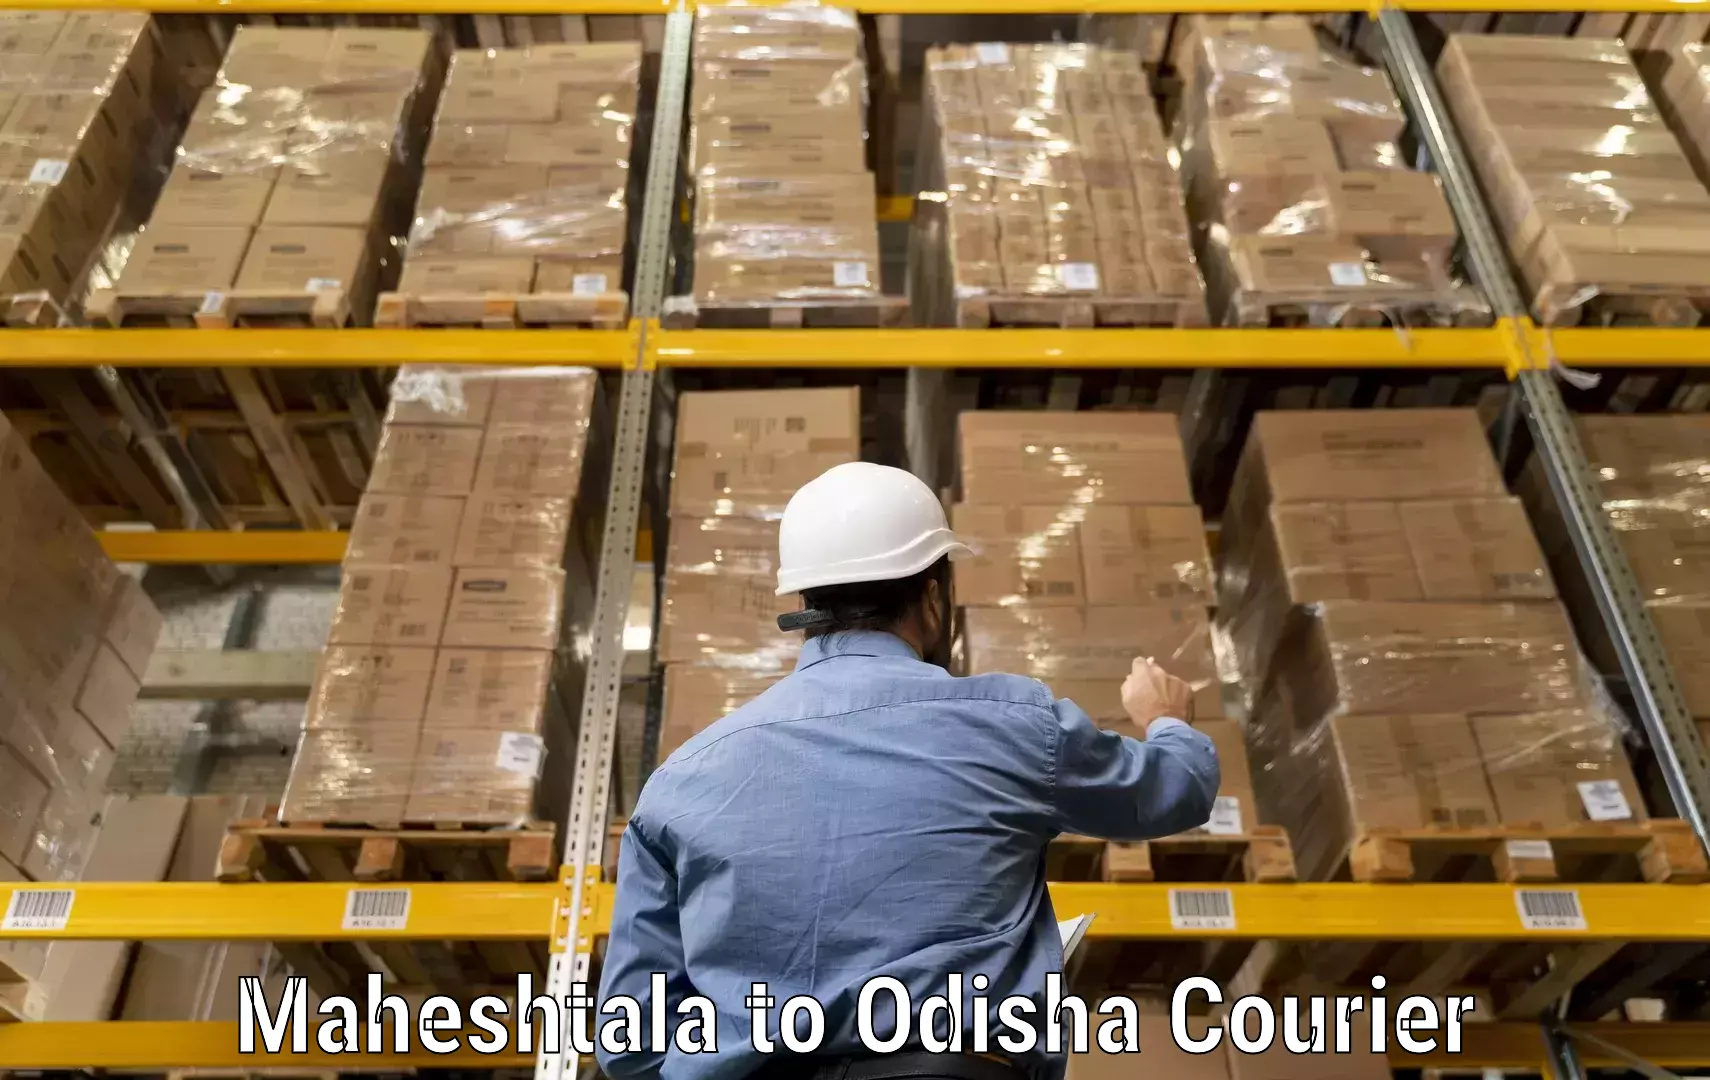 State-of-the-art courier technology Maheshtala to Nabarangpur